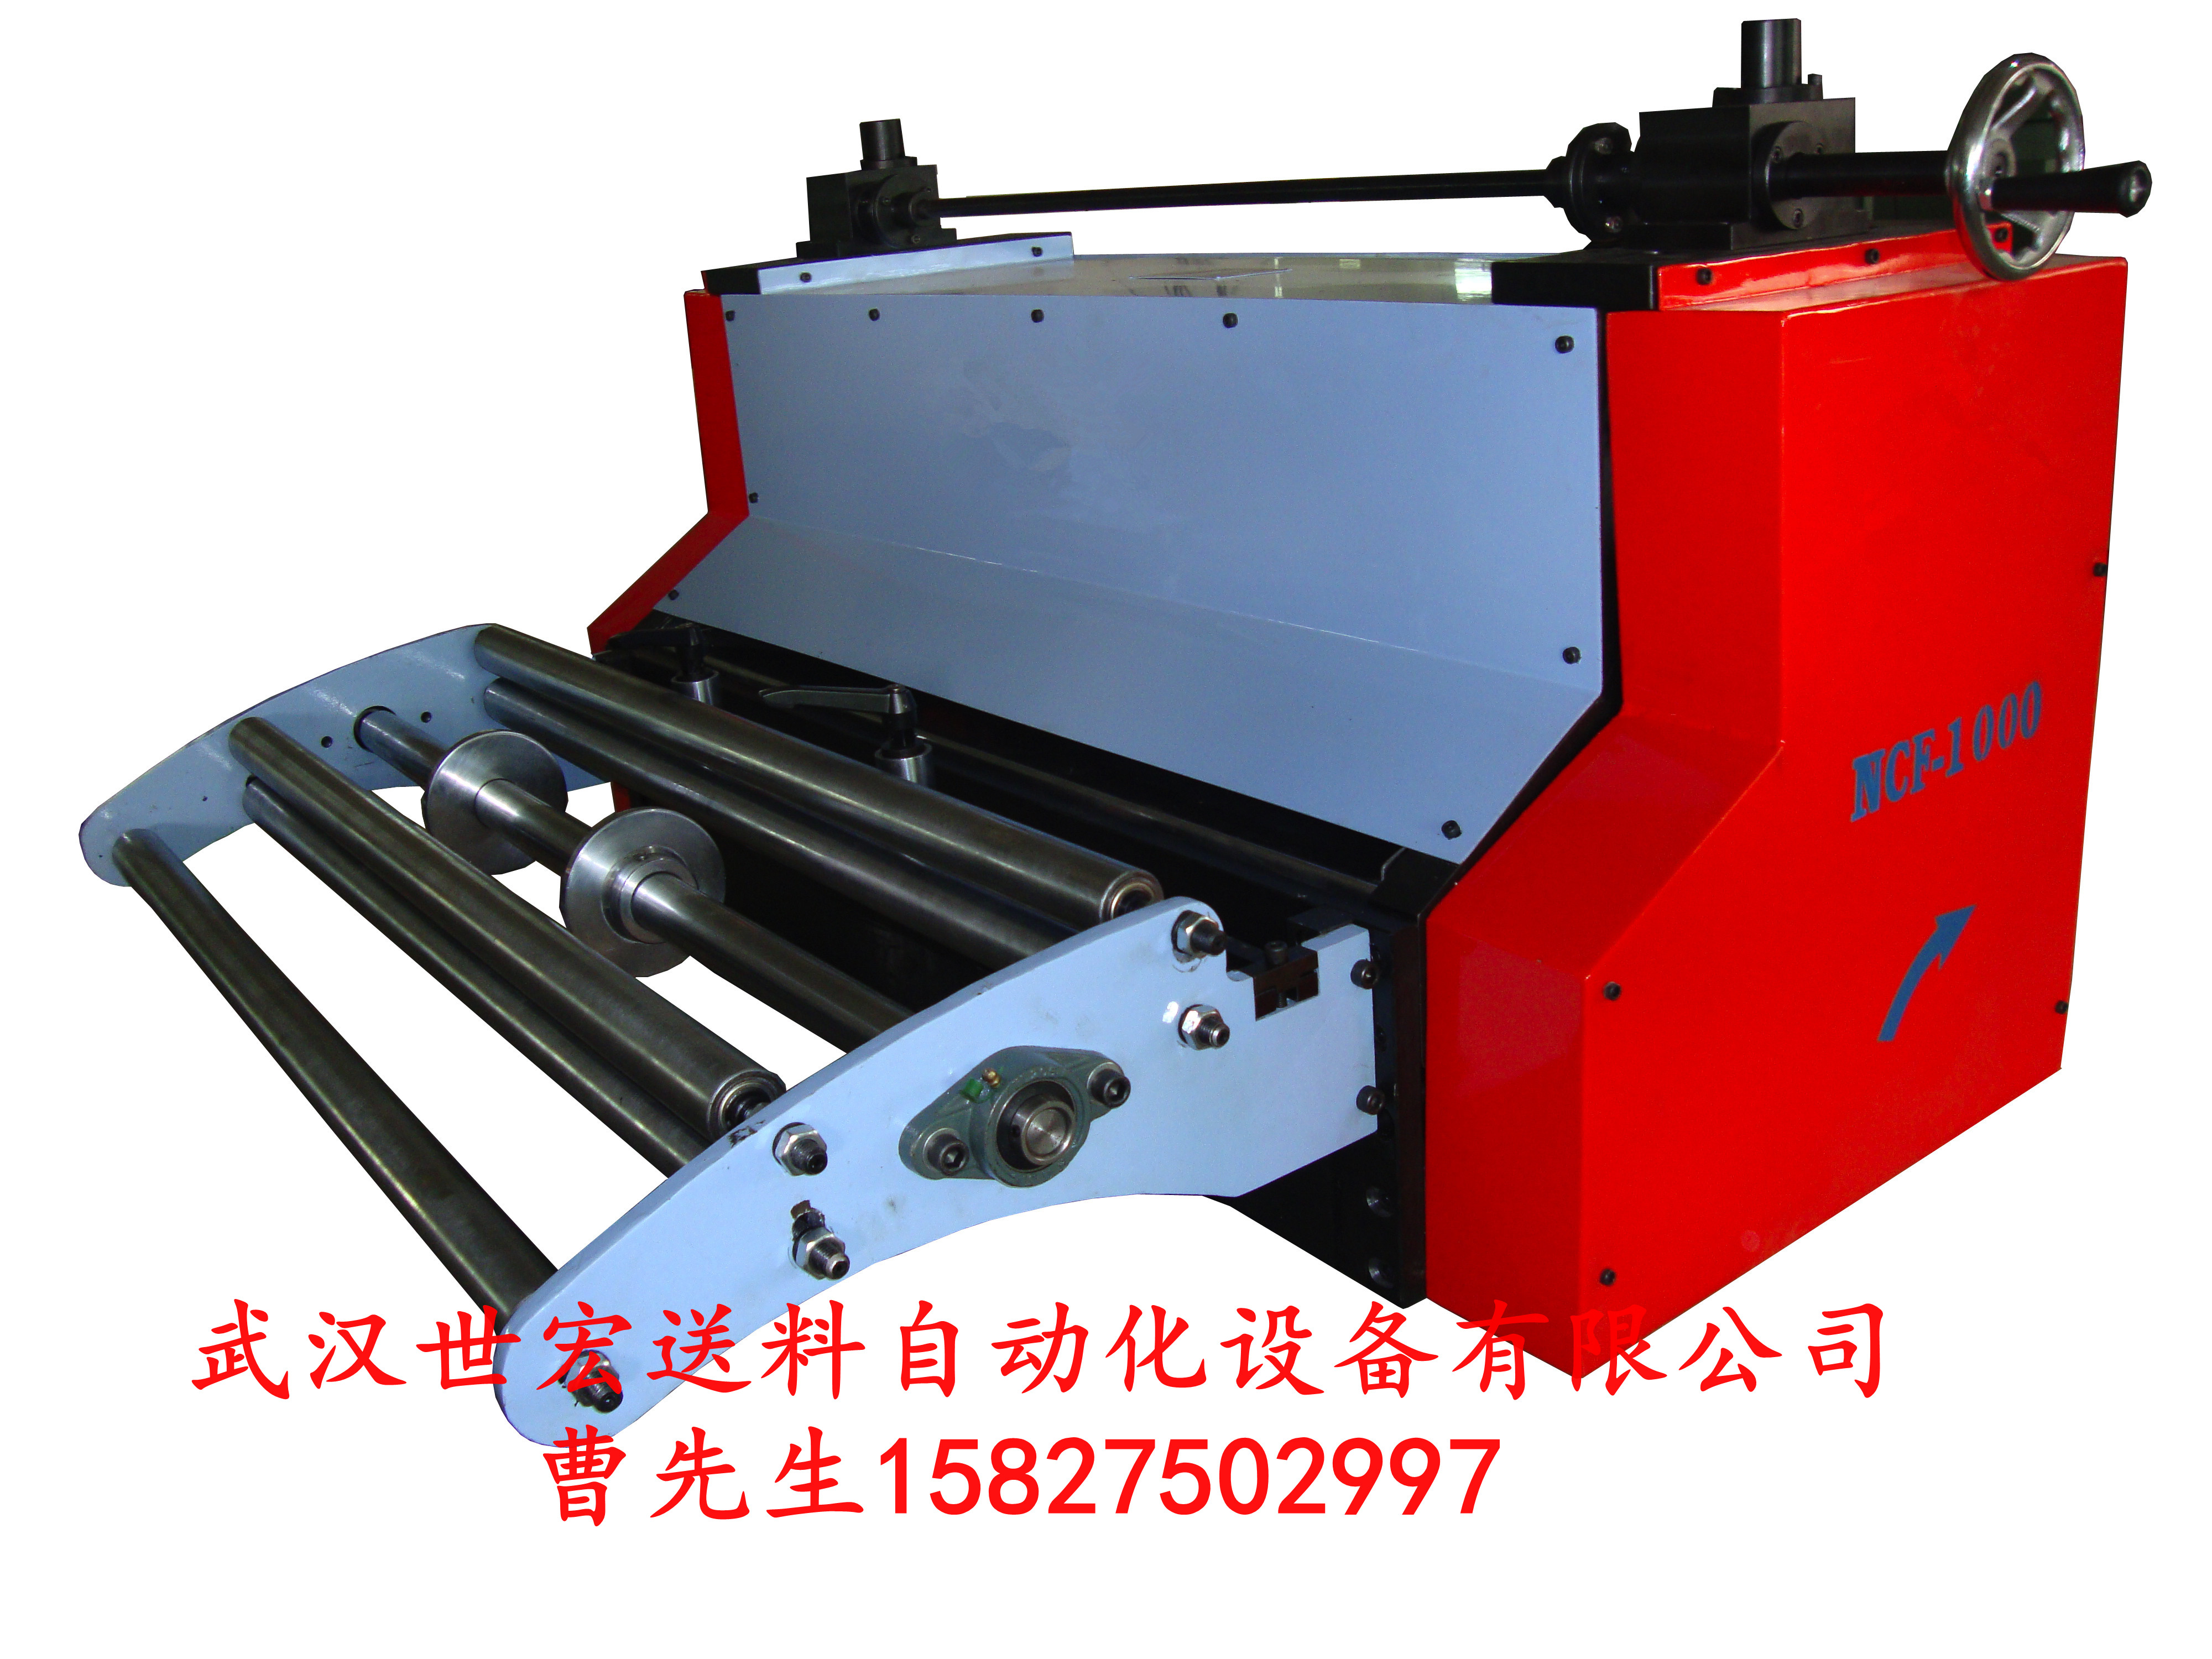 湖北武汉自动送料机厂家直销伺服滚轮式自动送料机